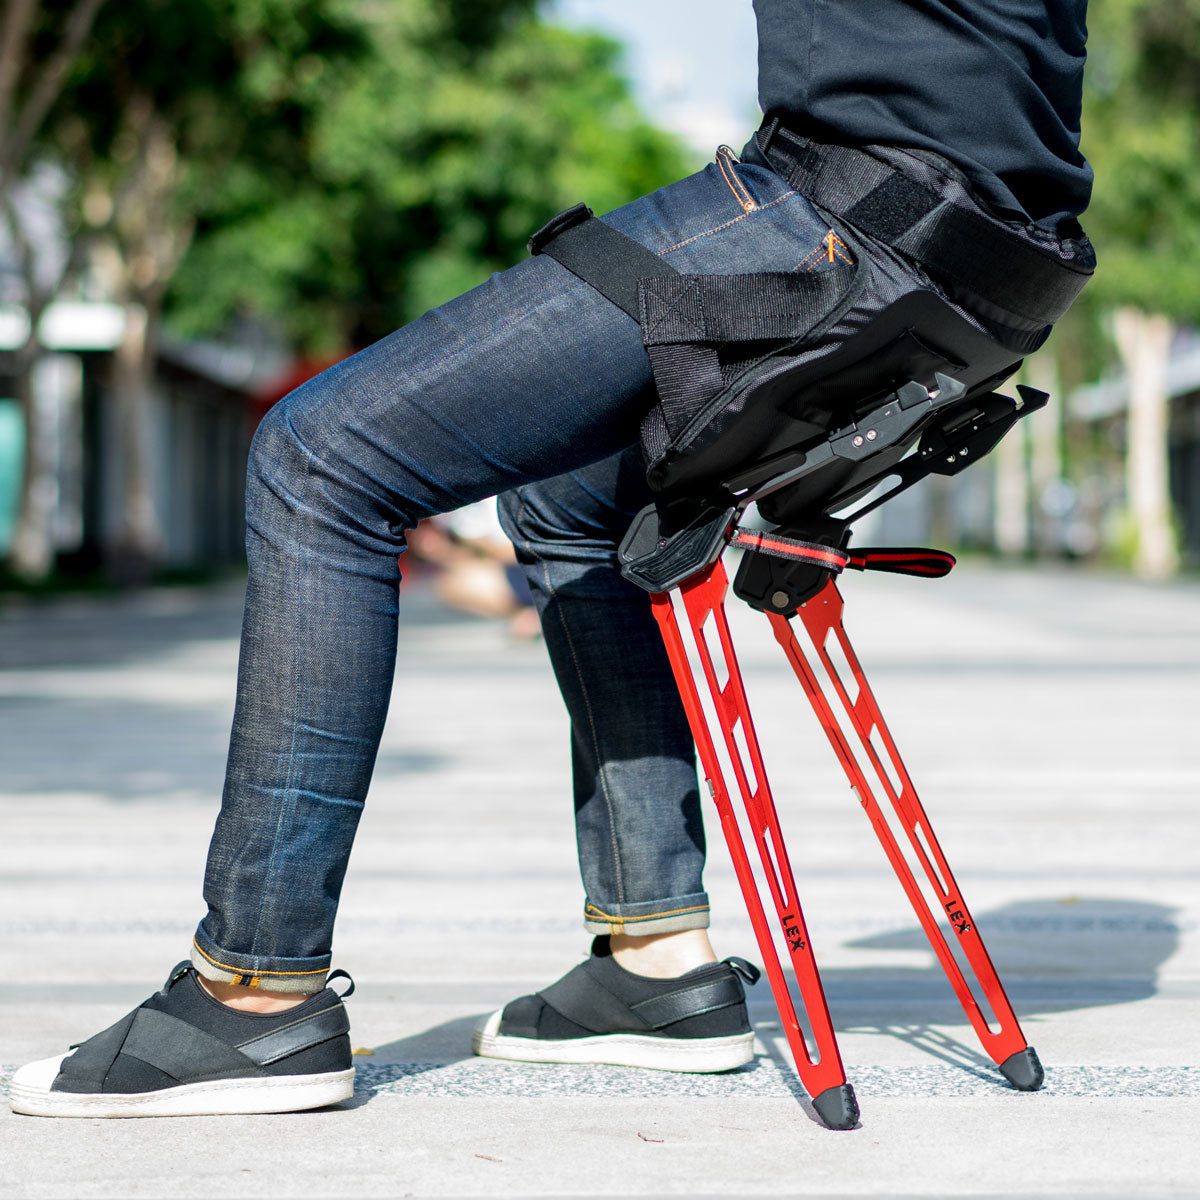 Lex-wearable-bionic-chair-Yaksa-Red-Left-side.jpg